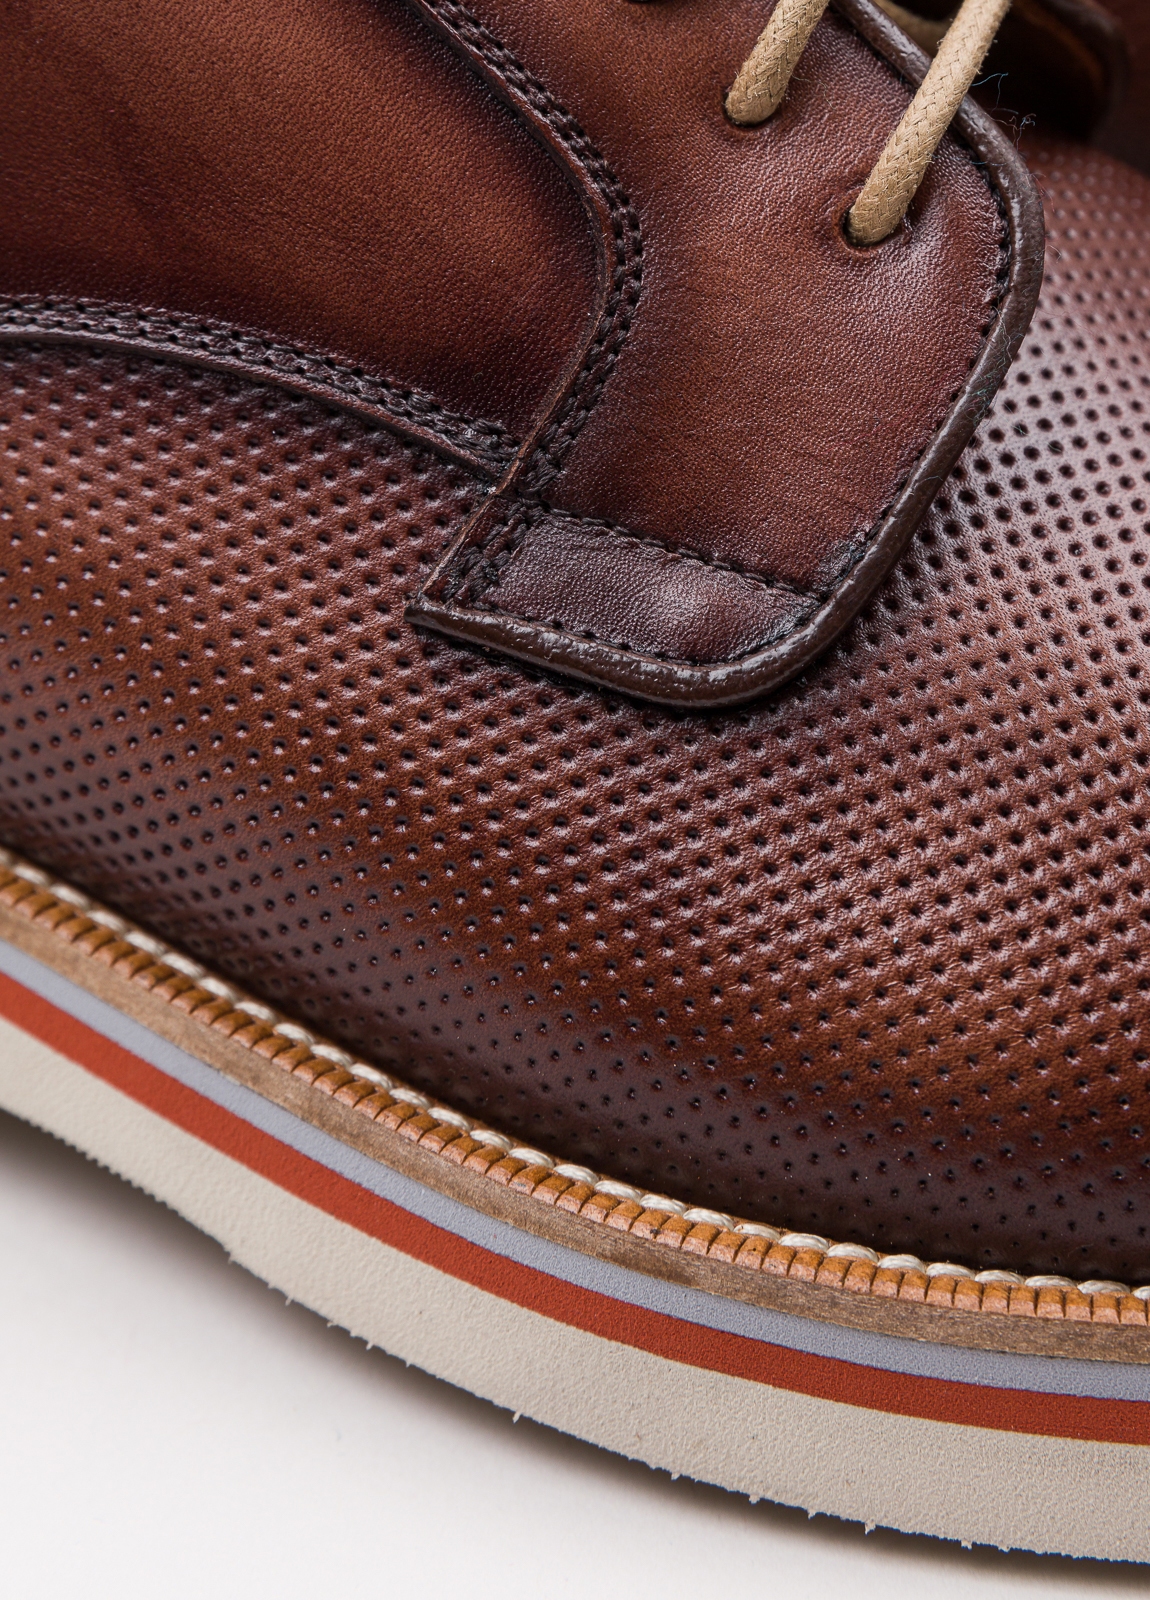 Zapato sport wear furest colección troquelado marrón - Ítem8